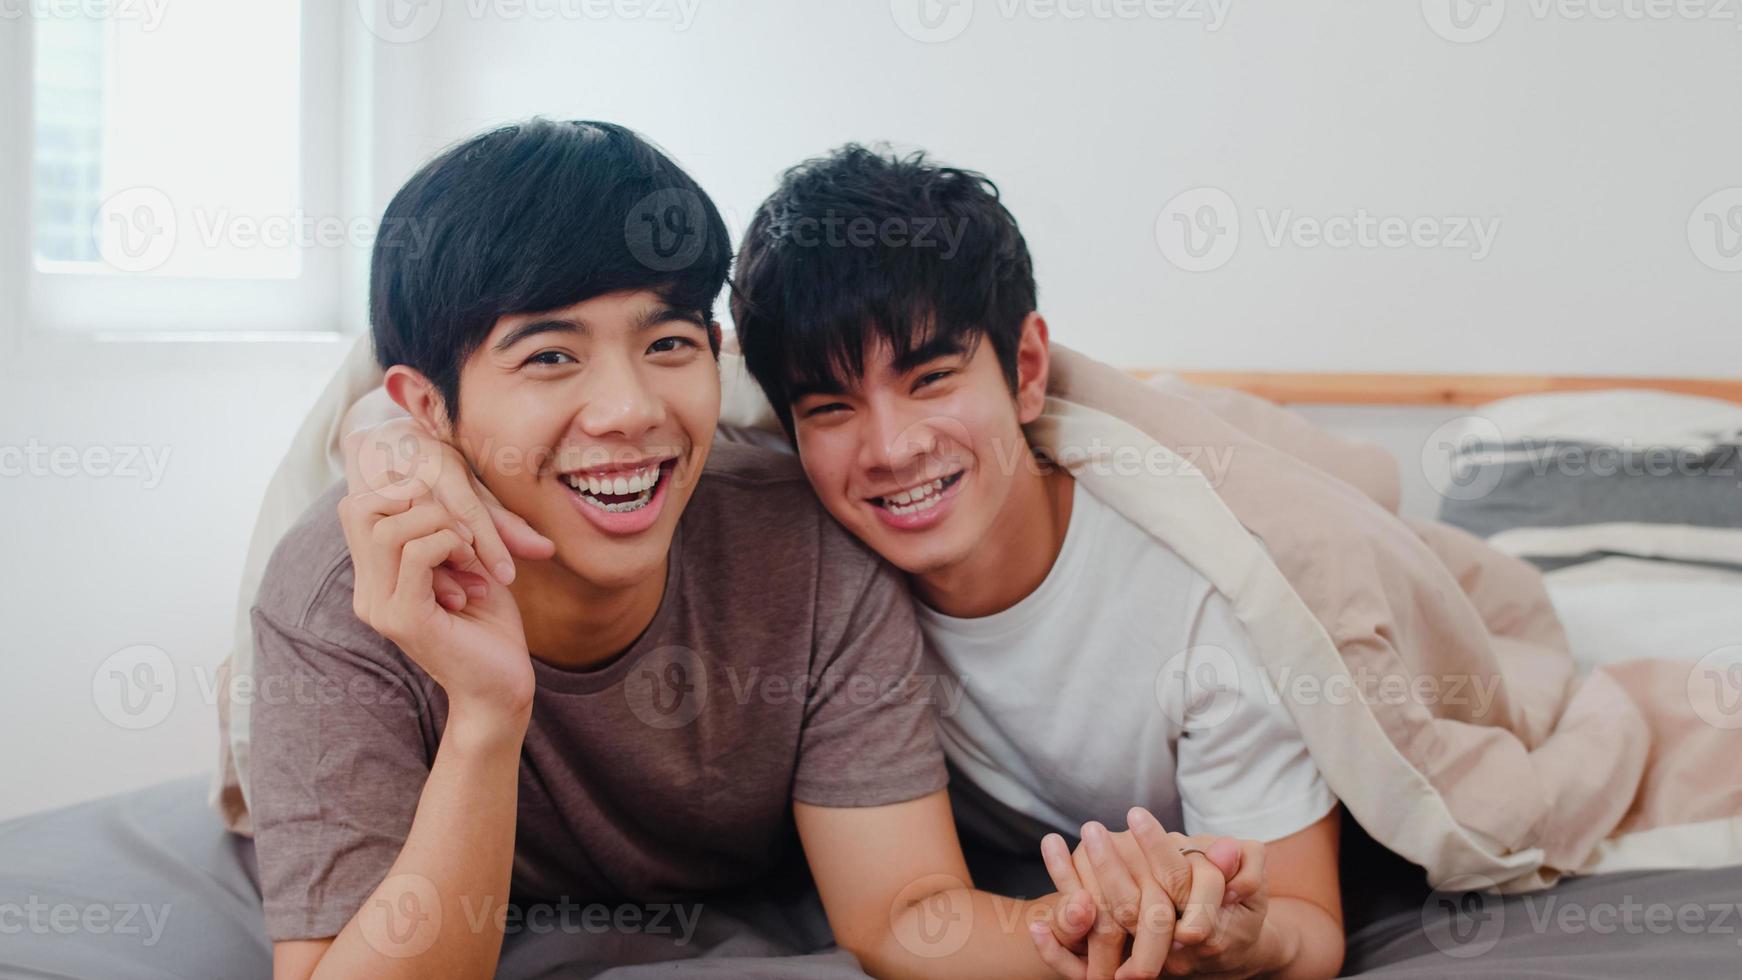 ritratto giovane coppia gay asiatica sentirsi felice a casa. asia lgbtq gli uomini rilassano il sorriso a trentadue denti guardando la telecamera mentre riposano insieme trascorrono del tempo romantico dopo essersi svegliati nella camera da letto della casa moderna al mattino. foto